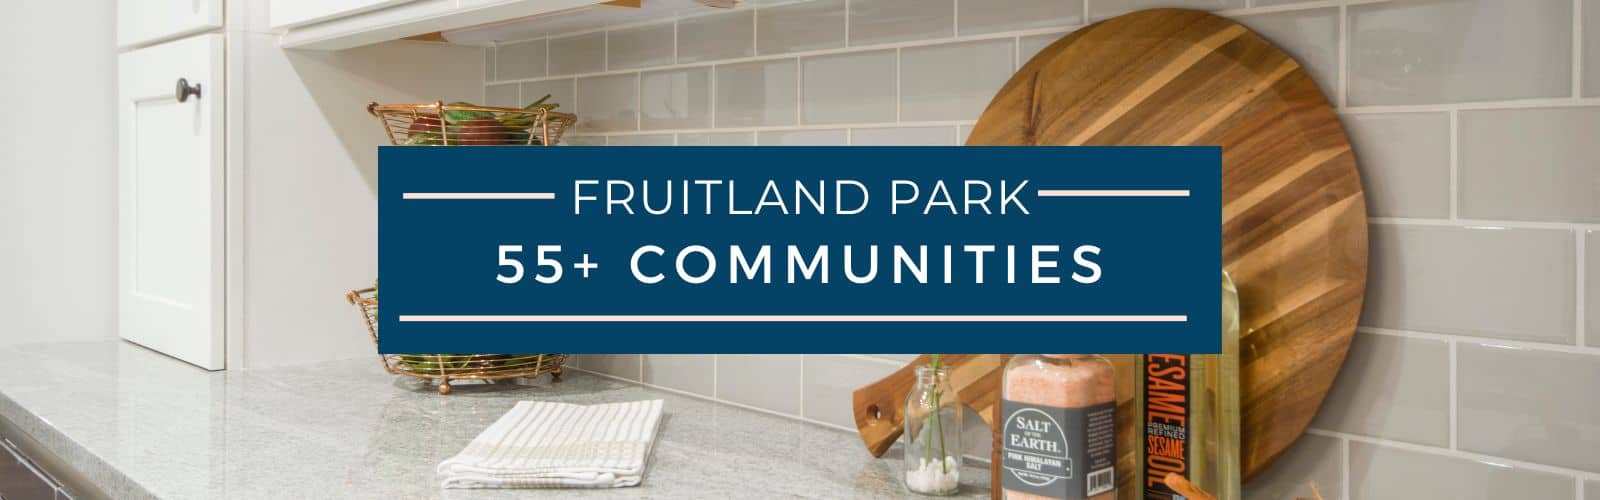 Fruitland Park 55+ Homes for Sale